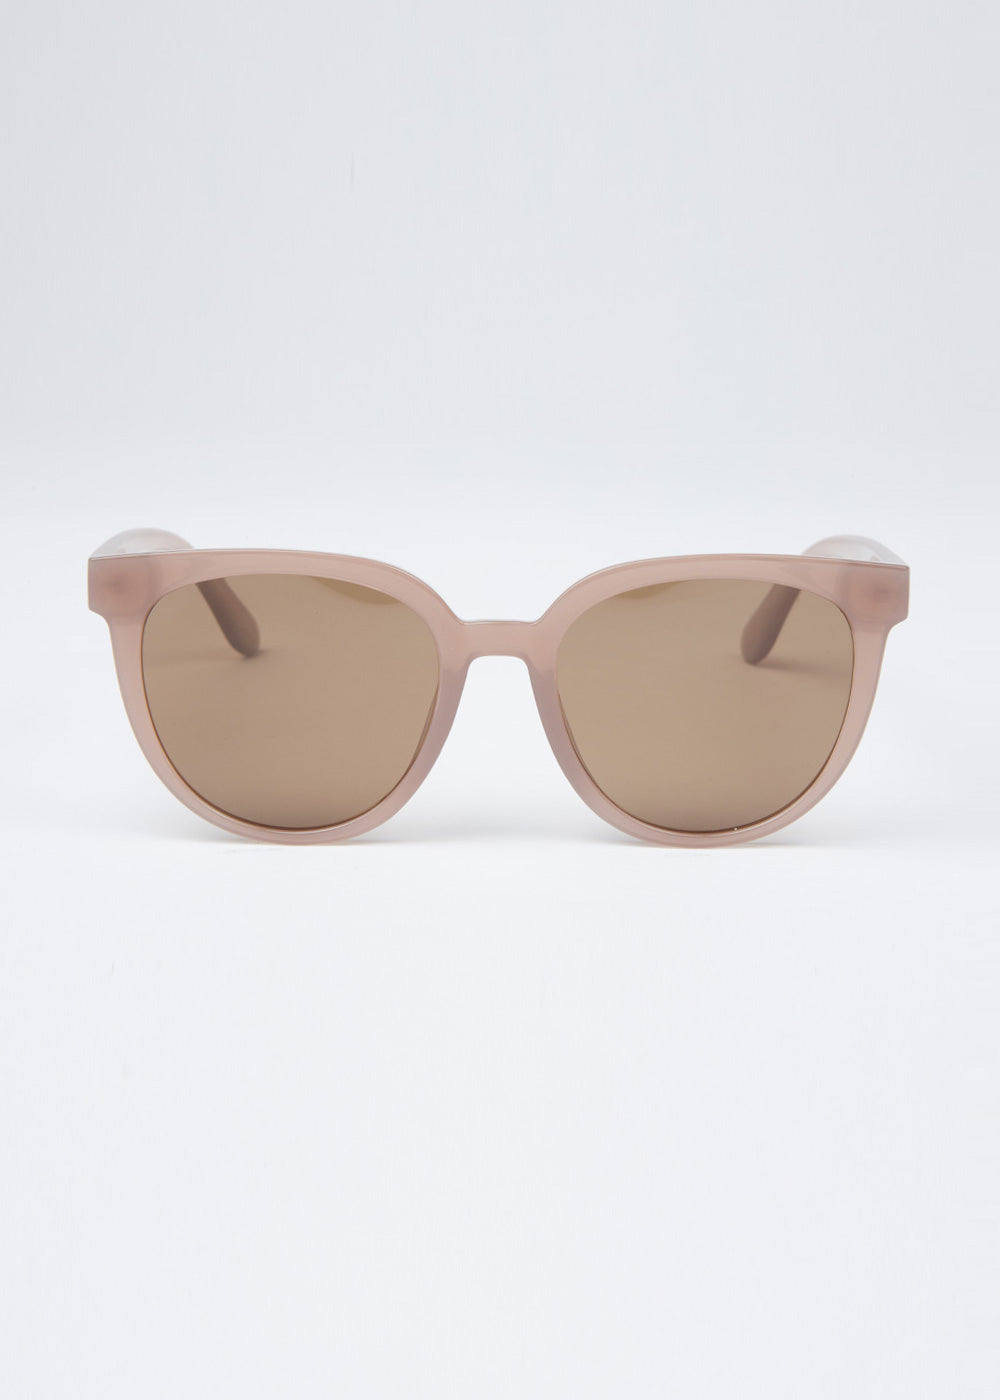 Light Beige Unisex Oval Sunglasses